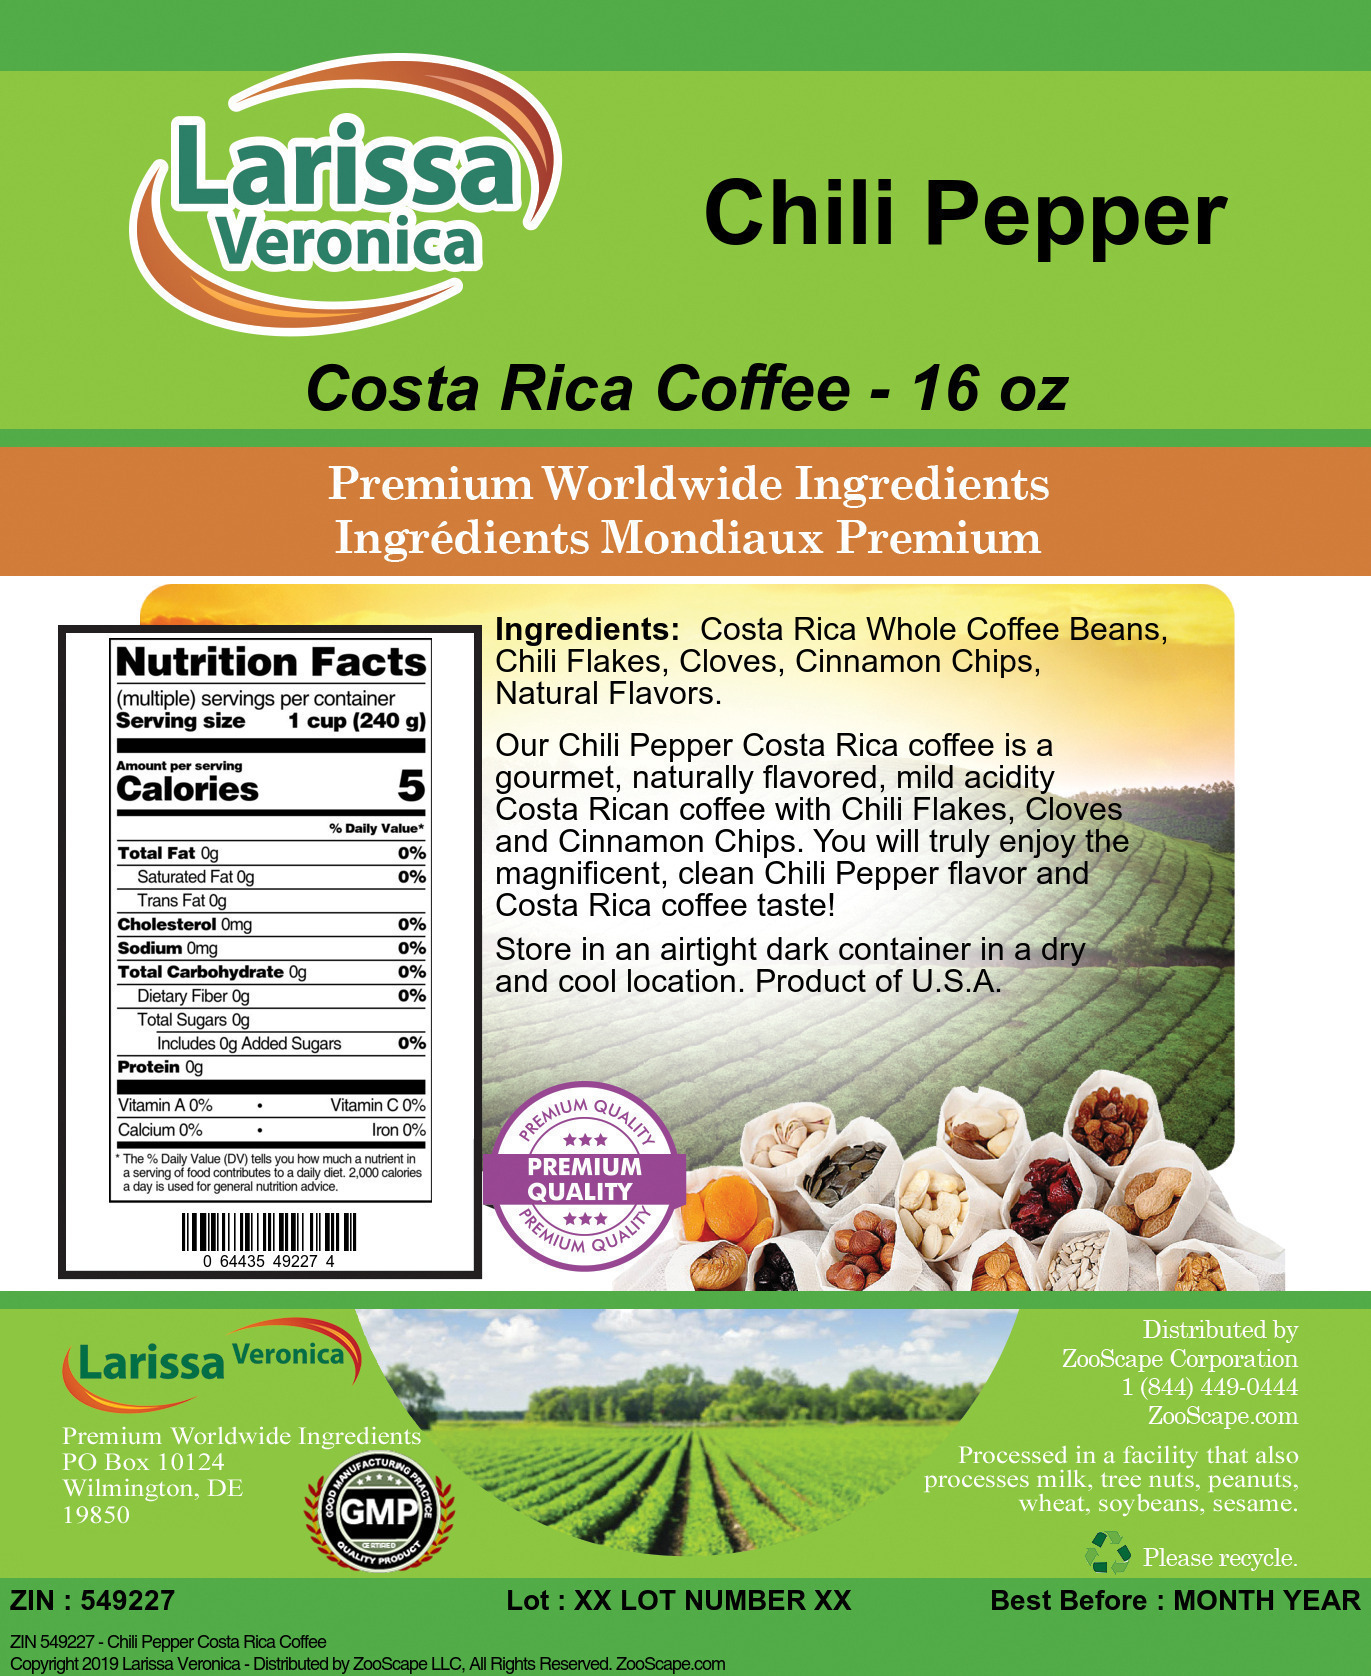 Chili Pepper Costa Rica Coffee - Label